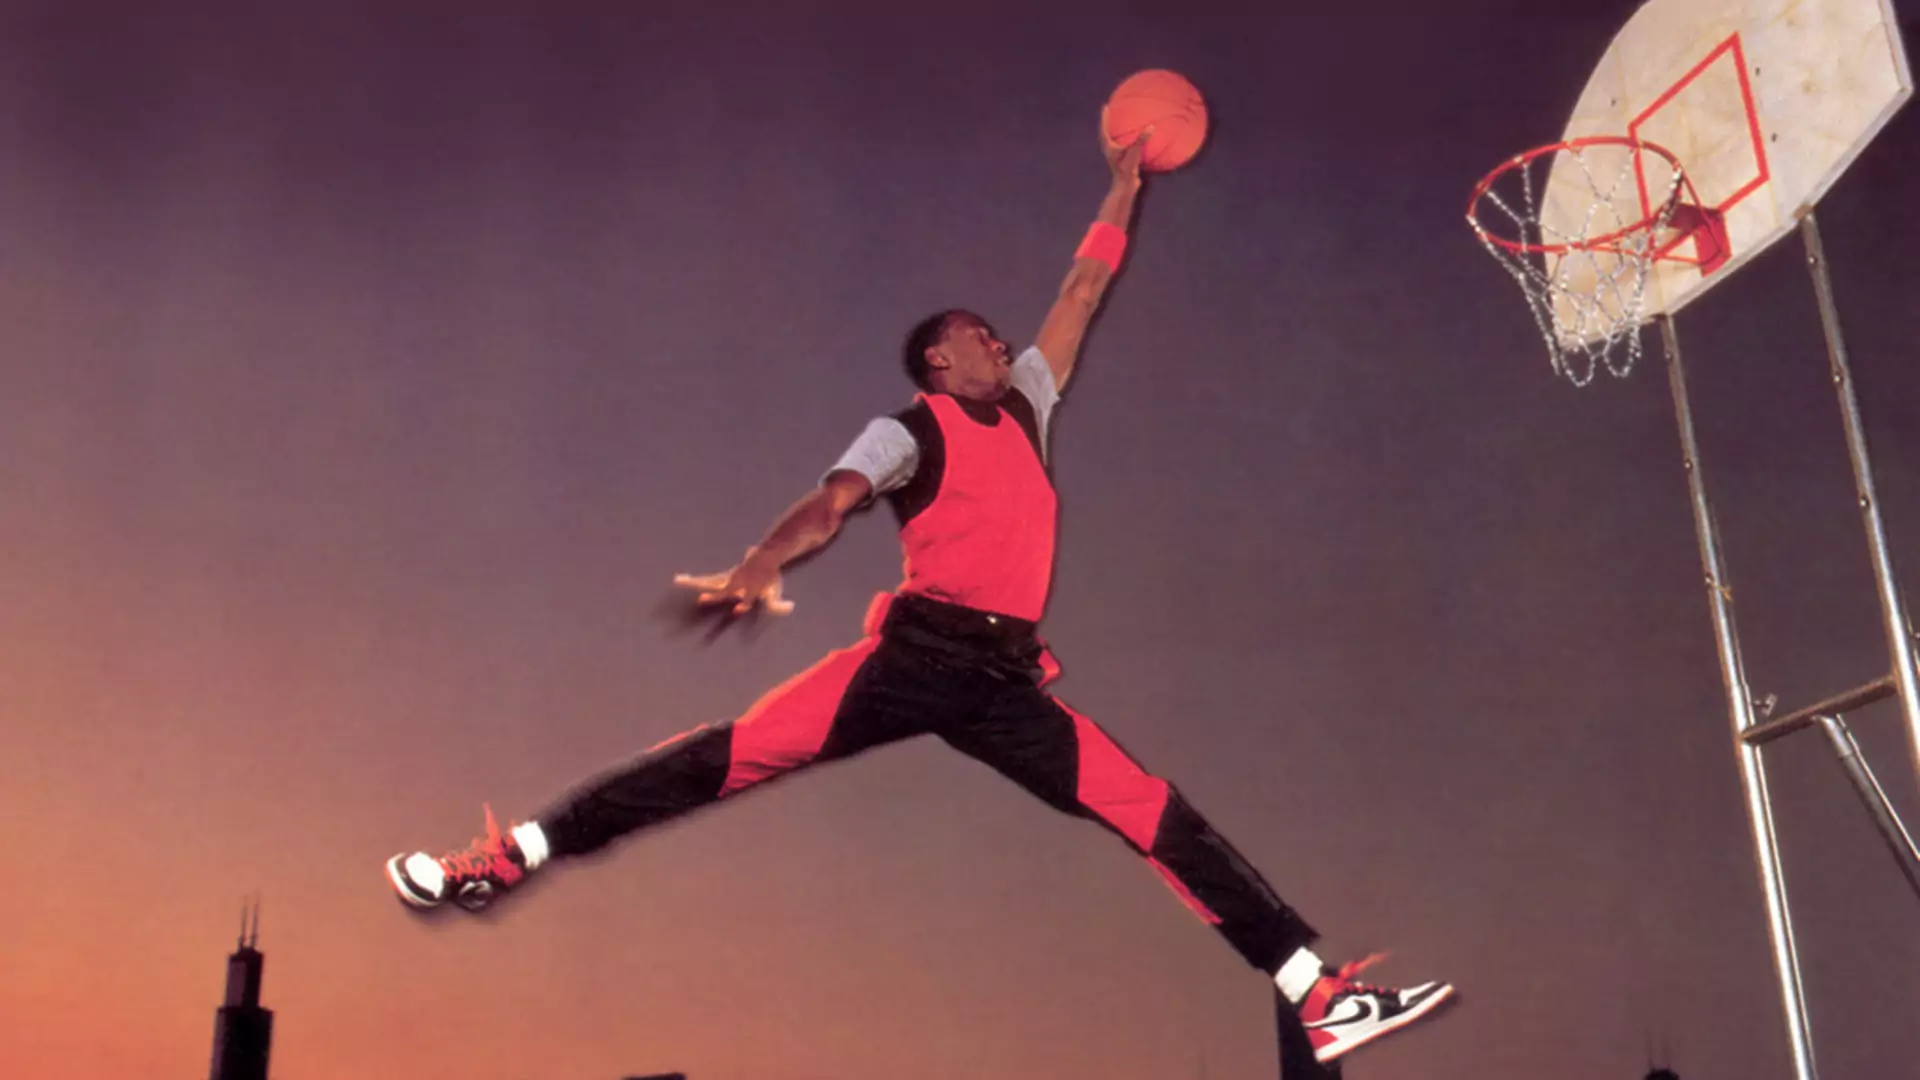 Nike wygrywa sądowy spór o kultowe zdjęcie Michaela Jordana